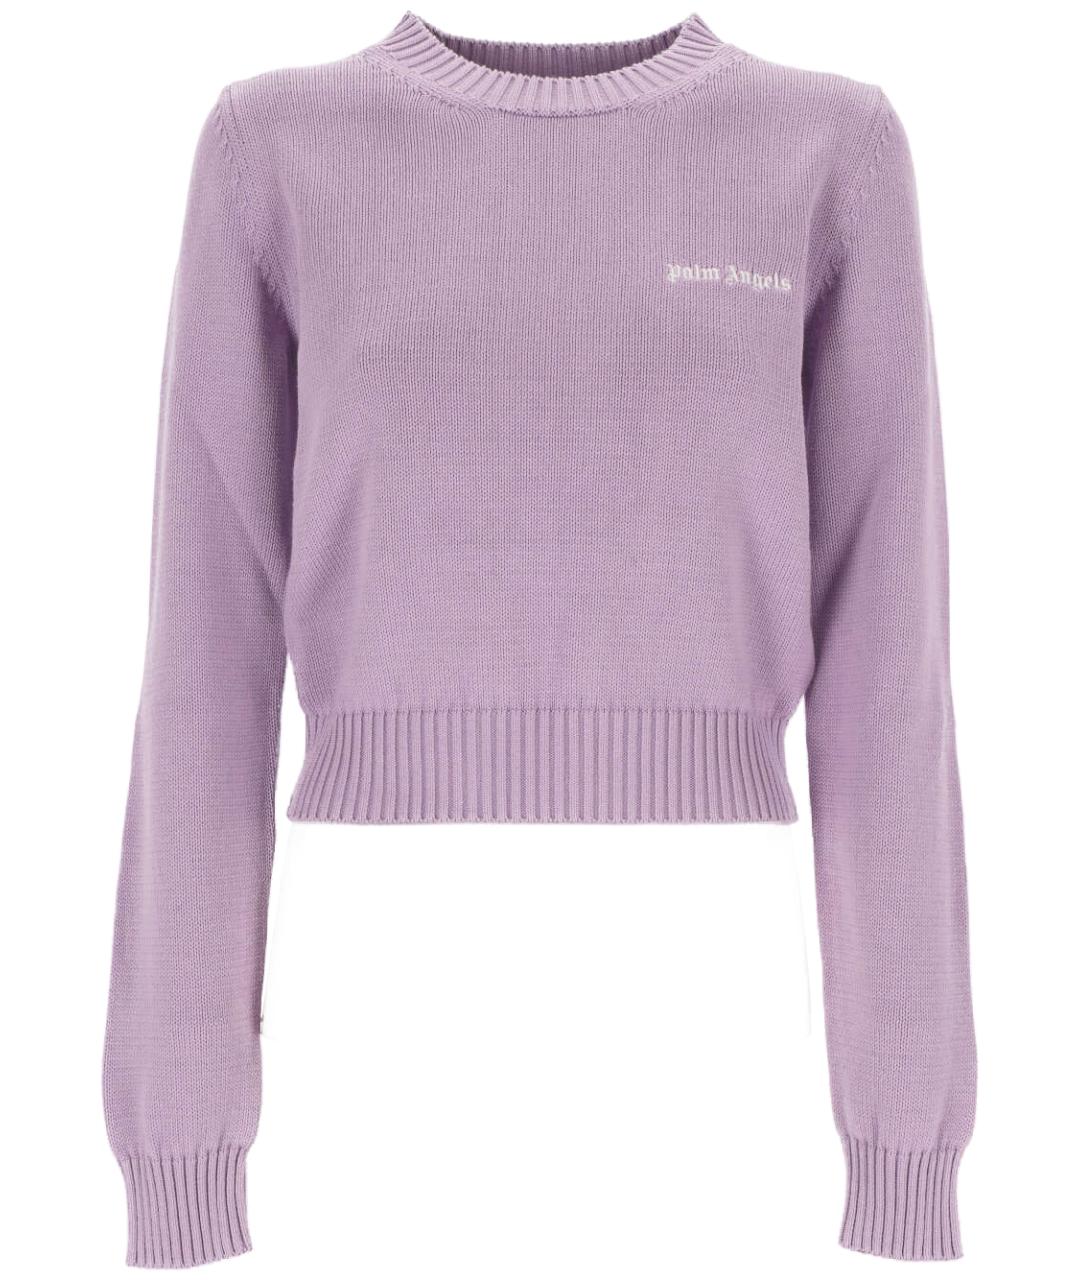 PALM ANGELS Фиолетовый хлопковый джемпер / свитер, фото 1